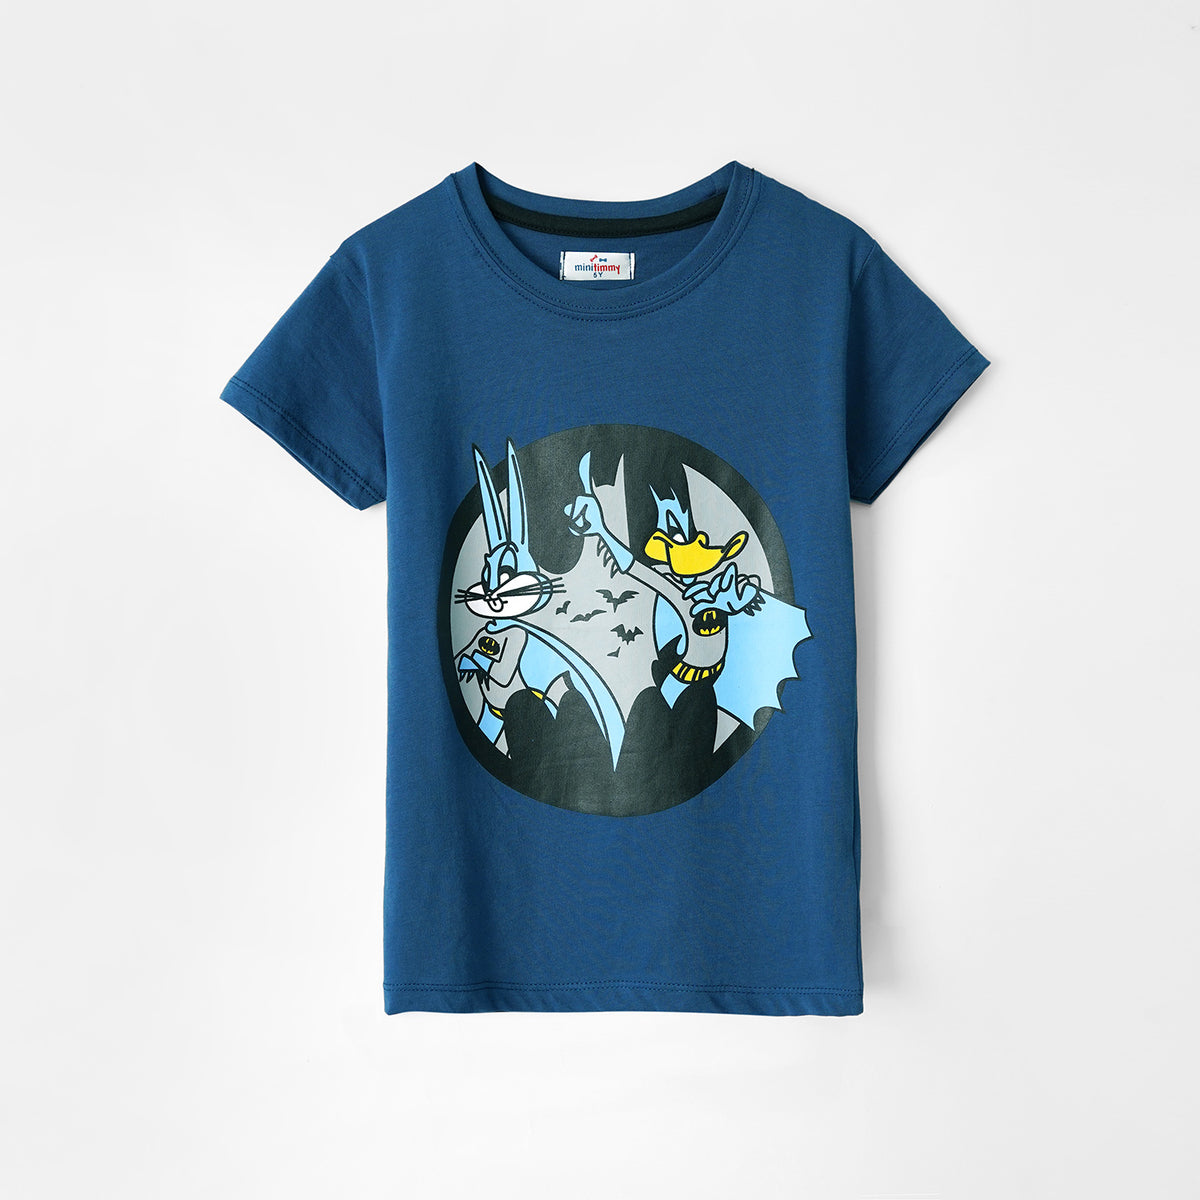 Kids Graphic Soft Cotton Dark Blue T-Shirt